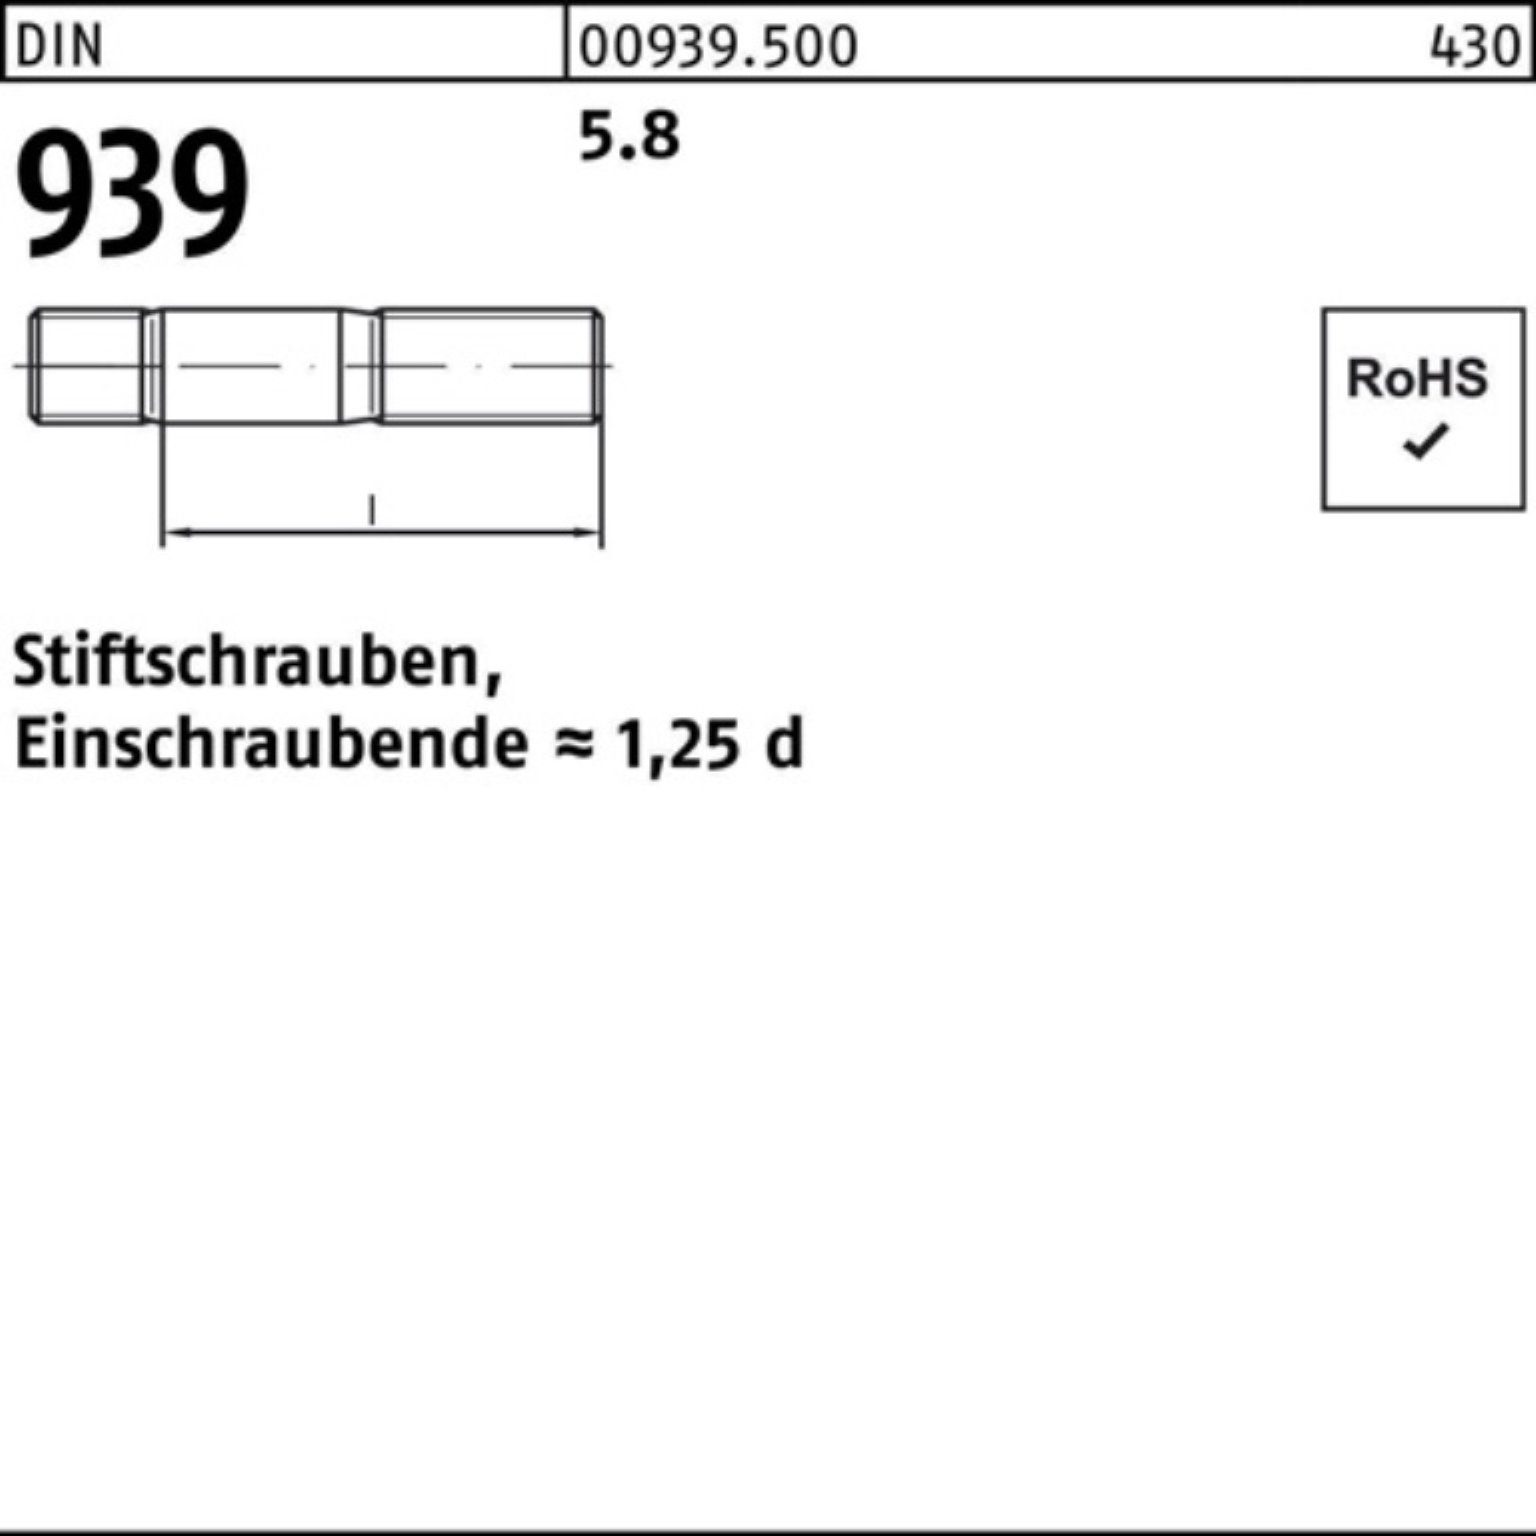 25 100er 5.8 100 Stiftschraube M6x Einschraubende=1,25d S Reyher Stiftschraube Pack 939 DIN